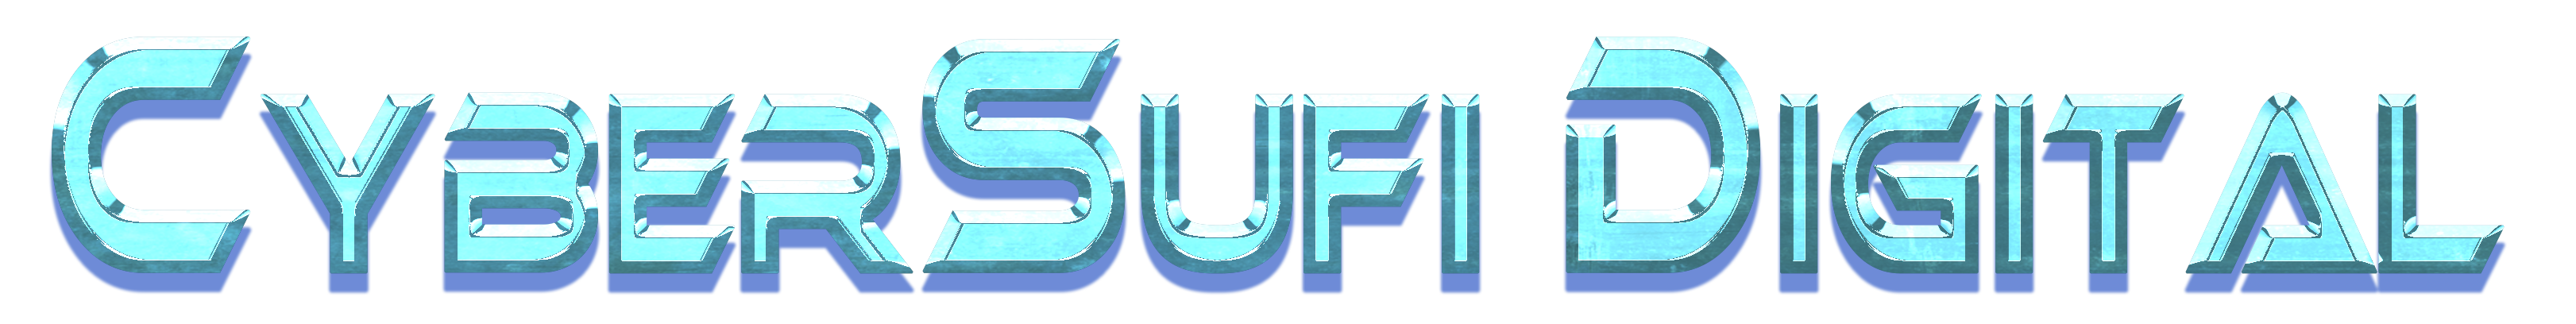 cybersufi logo